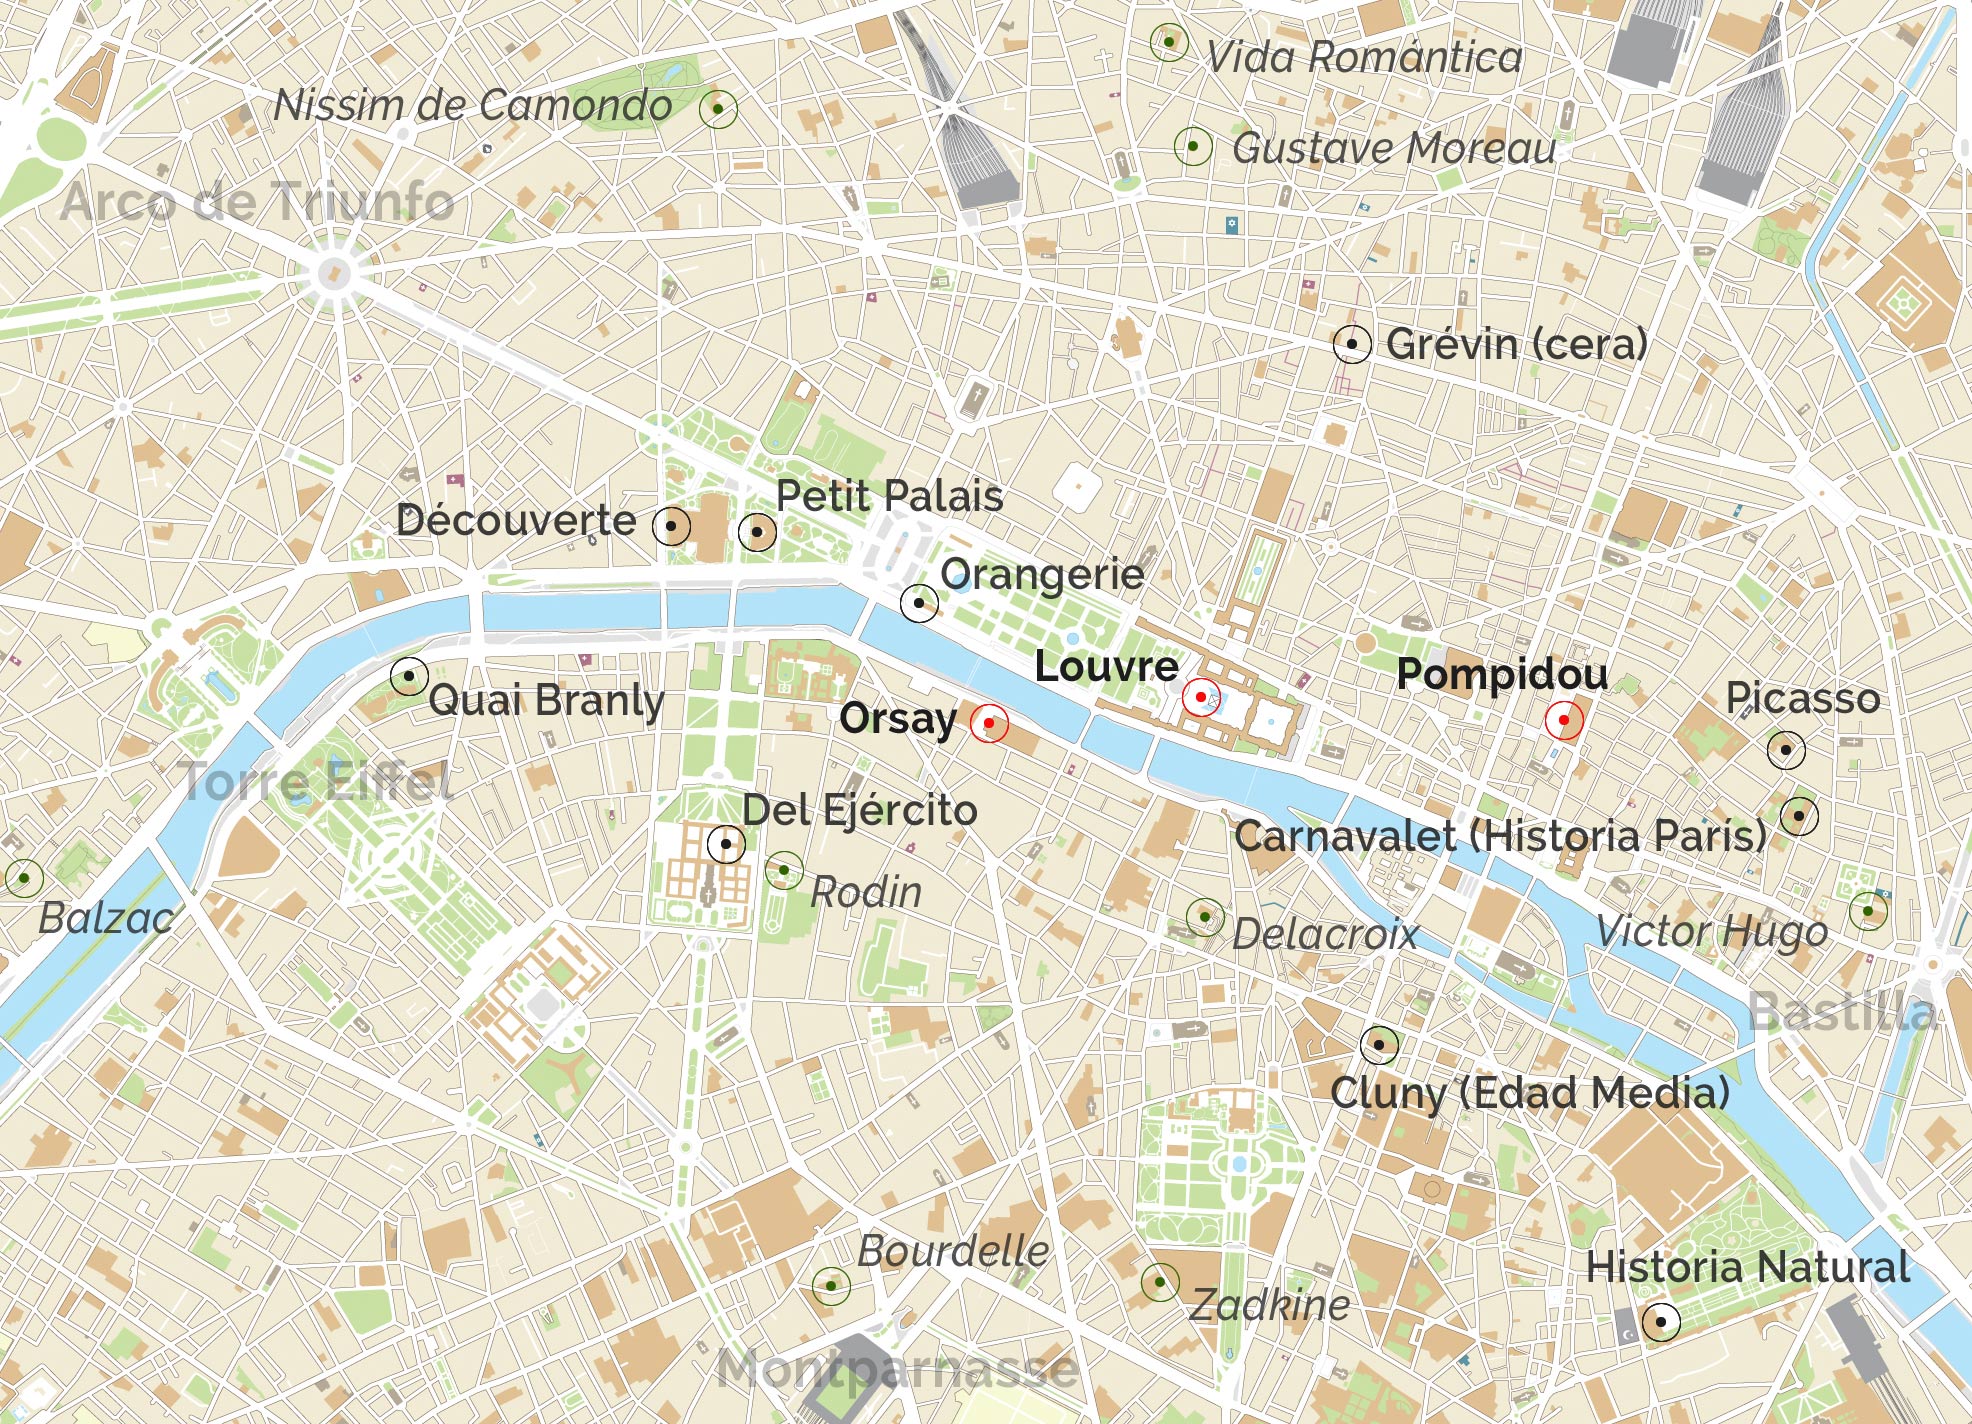 Mapa de los museos de París